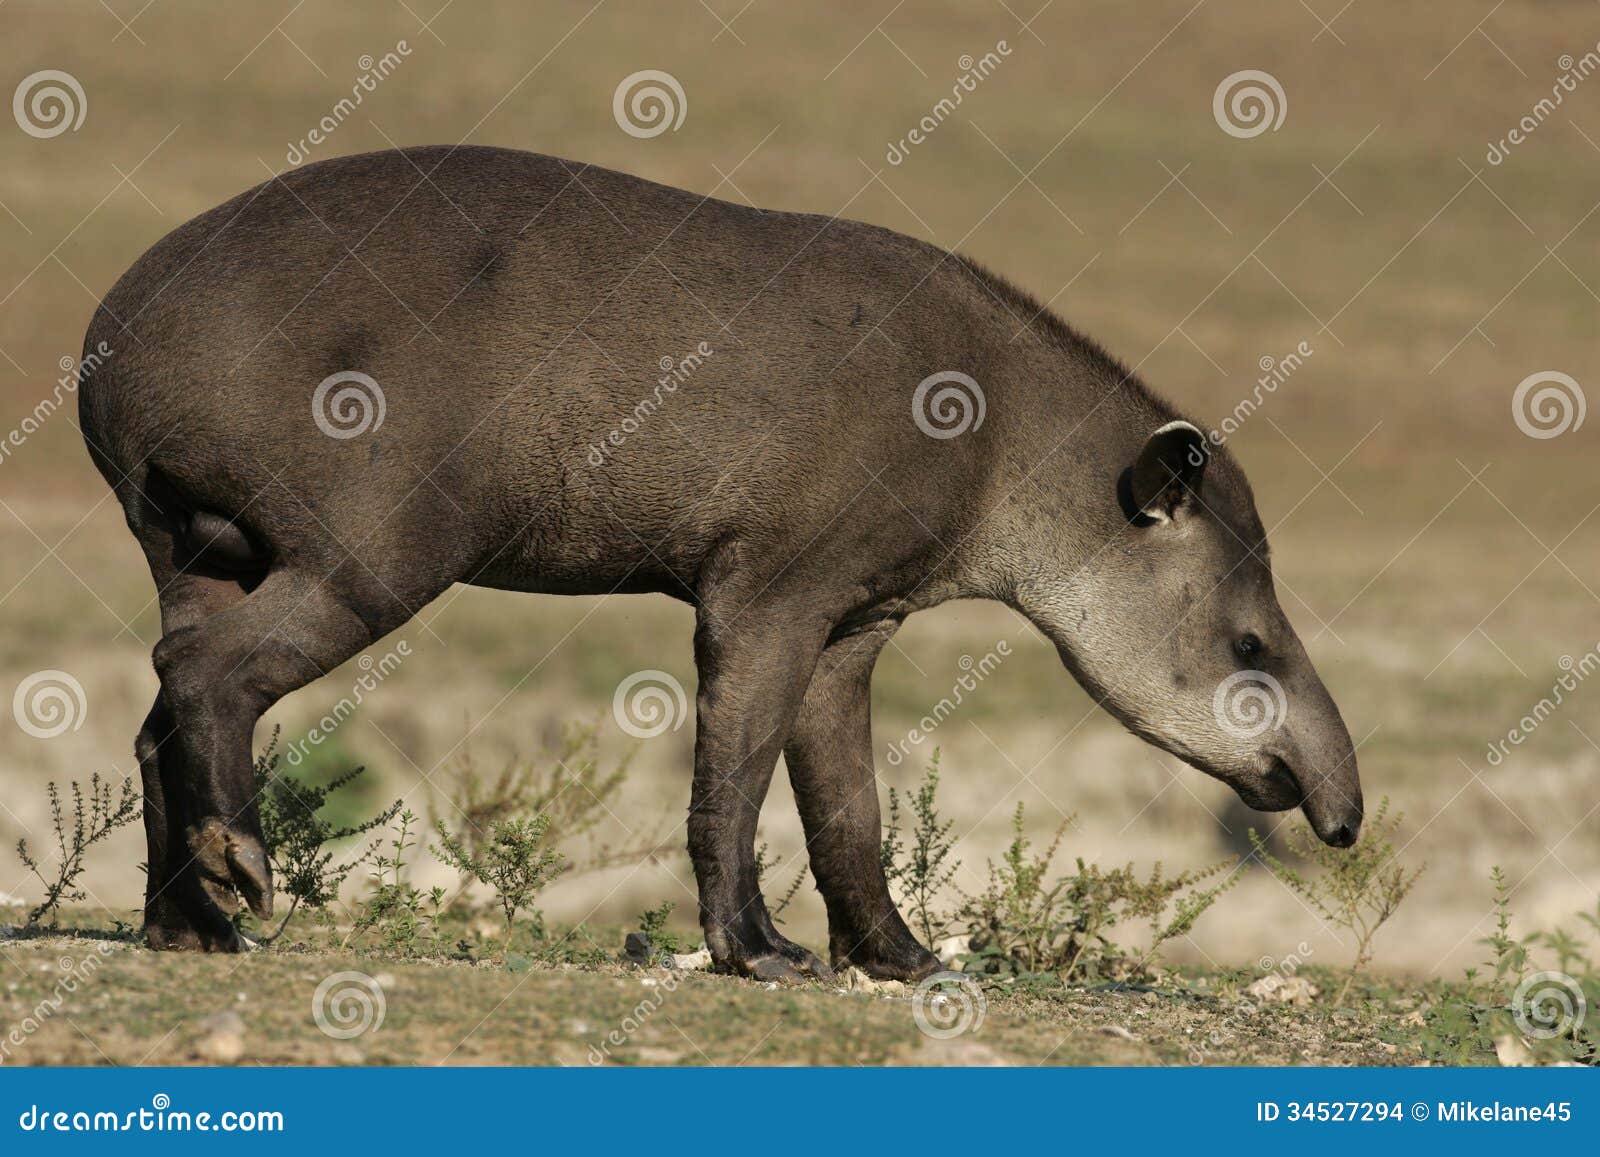 brazilian tapir, tapirus terrestris,